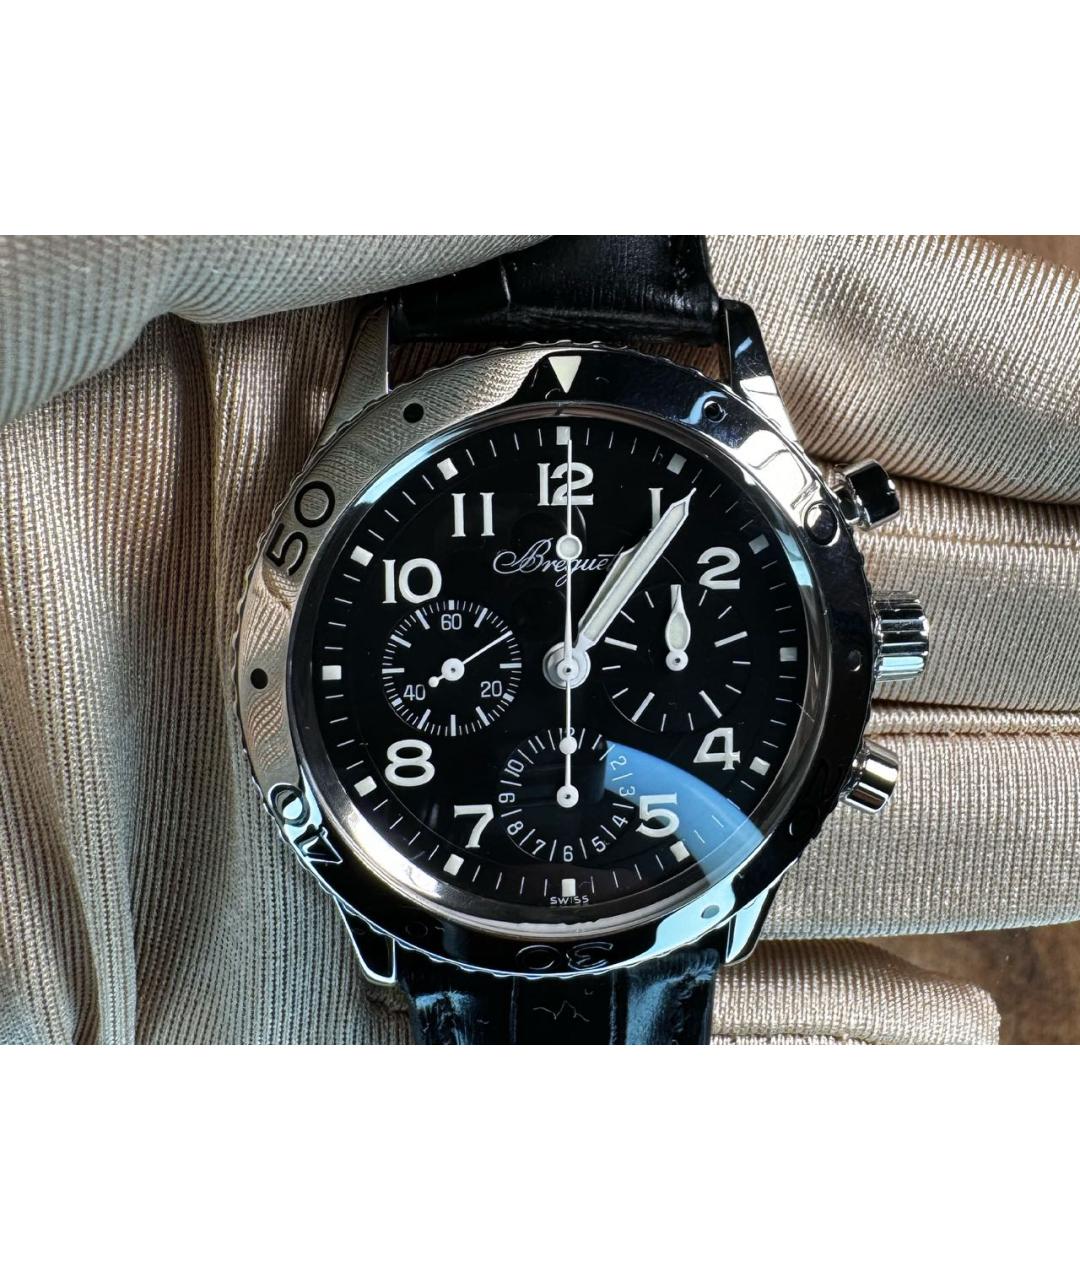 Breguet Черные металлические часы, фото 2